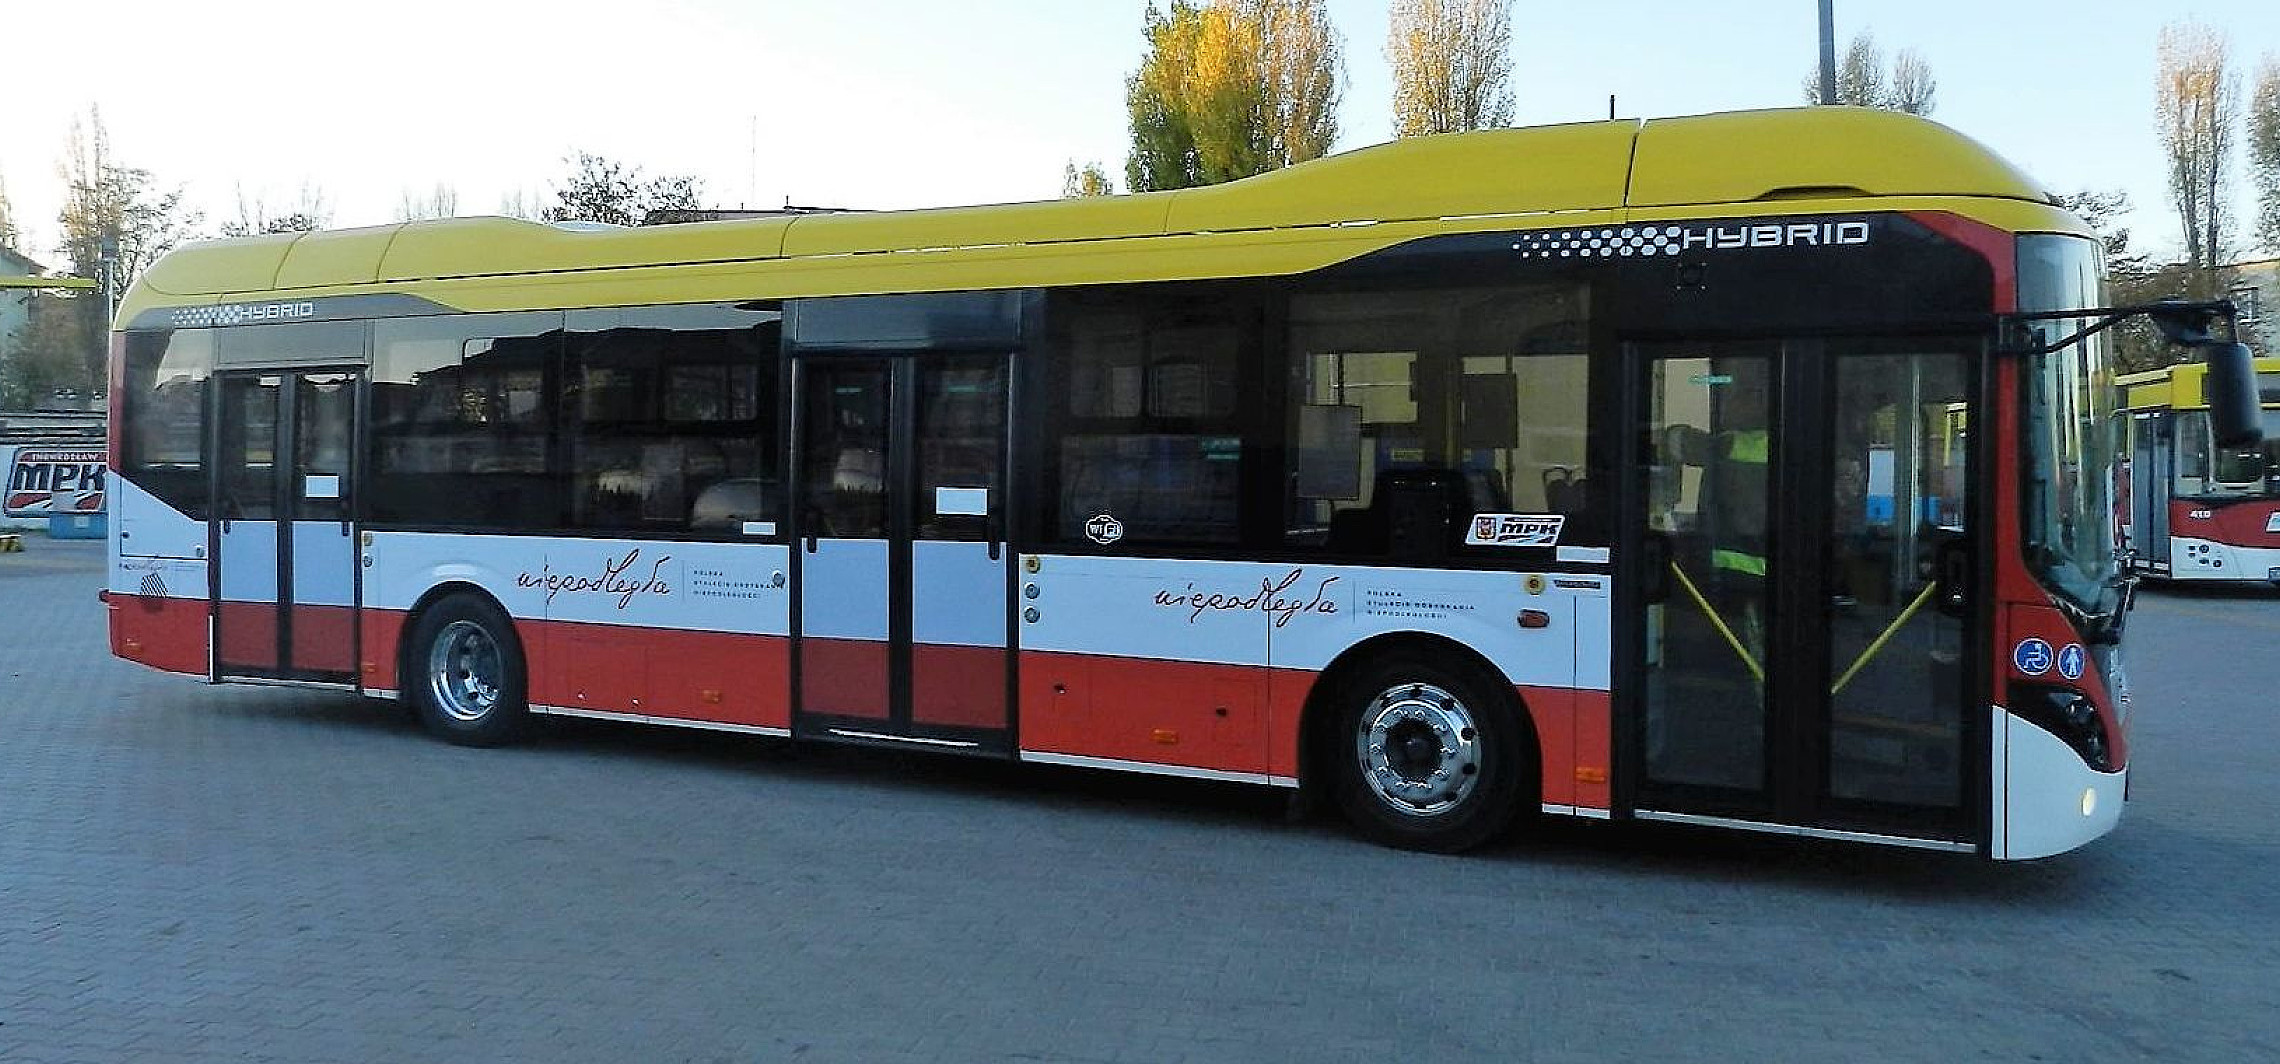 Inowrocław - Patriotyczny autobus na ulicach